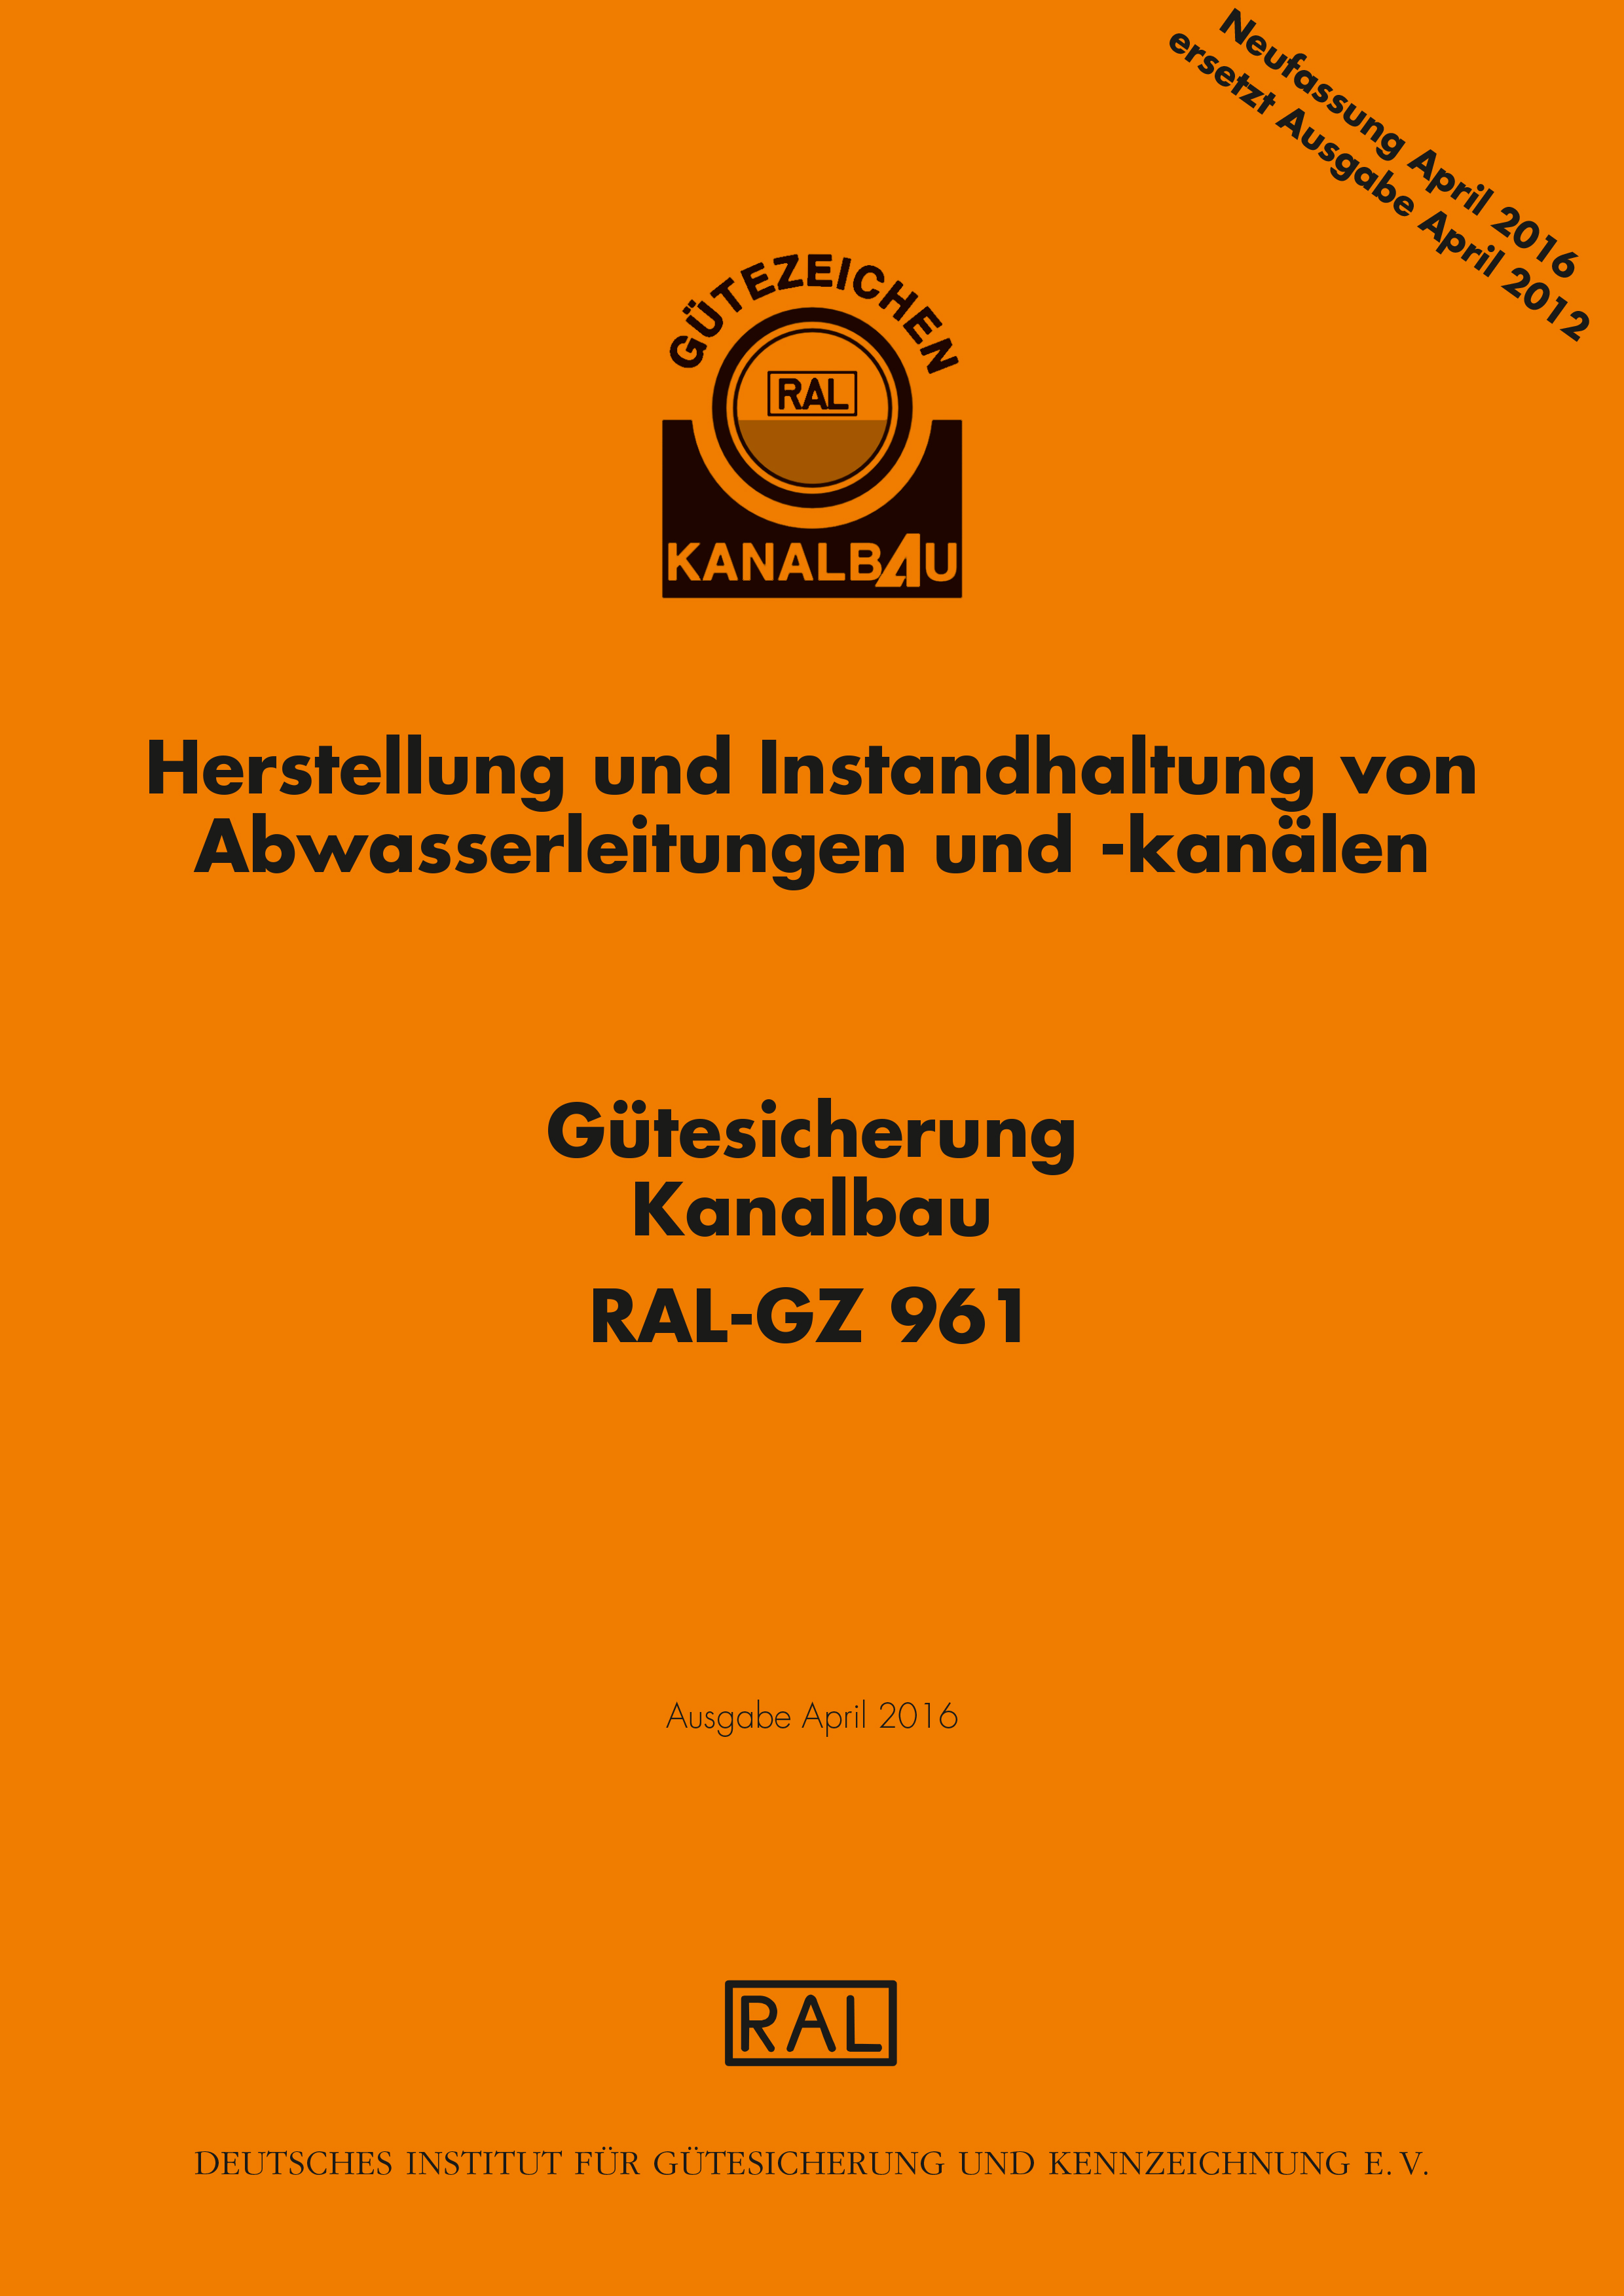 Gütesicherung Kanalbau       RAL-GZ 961